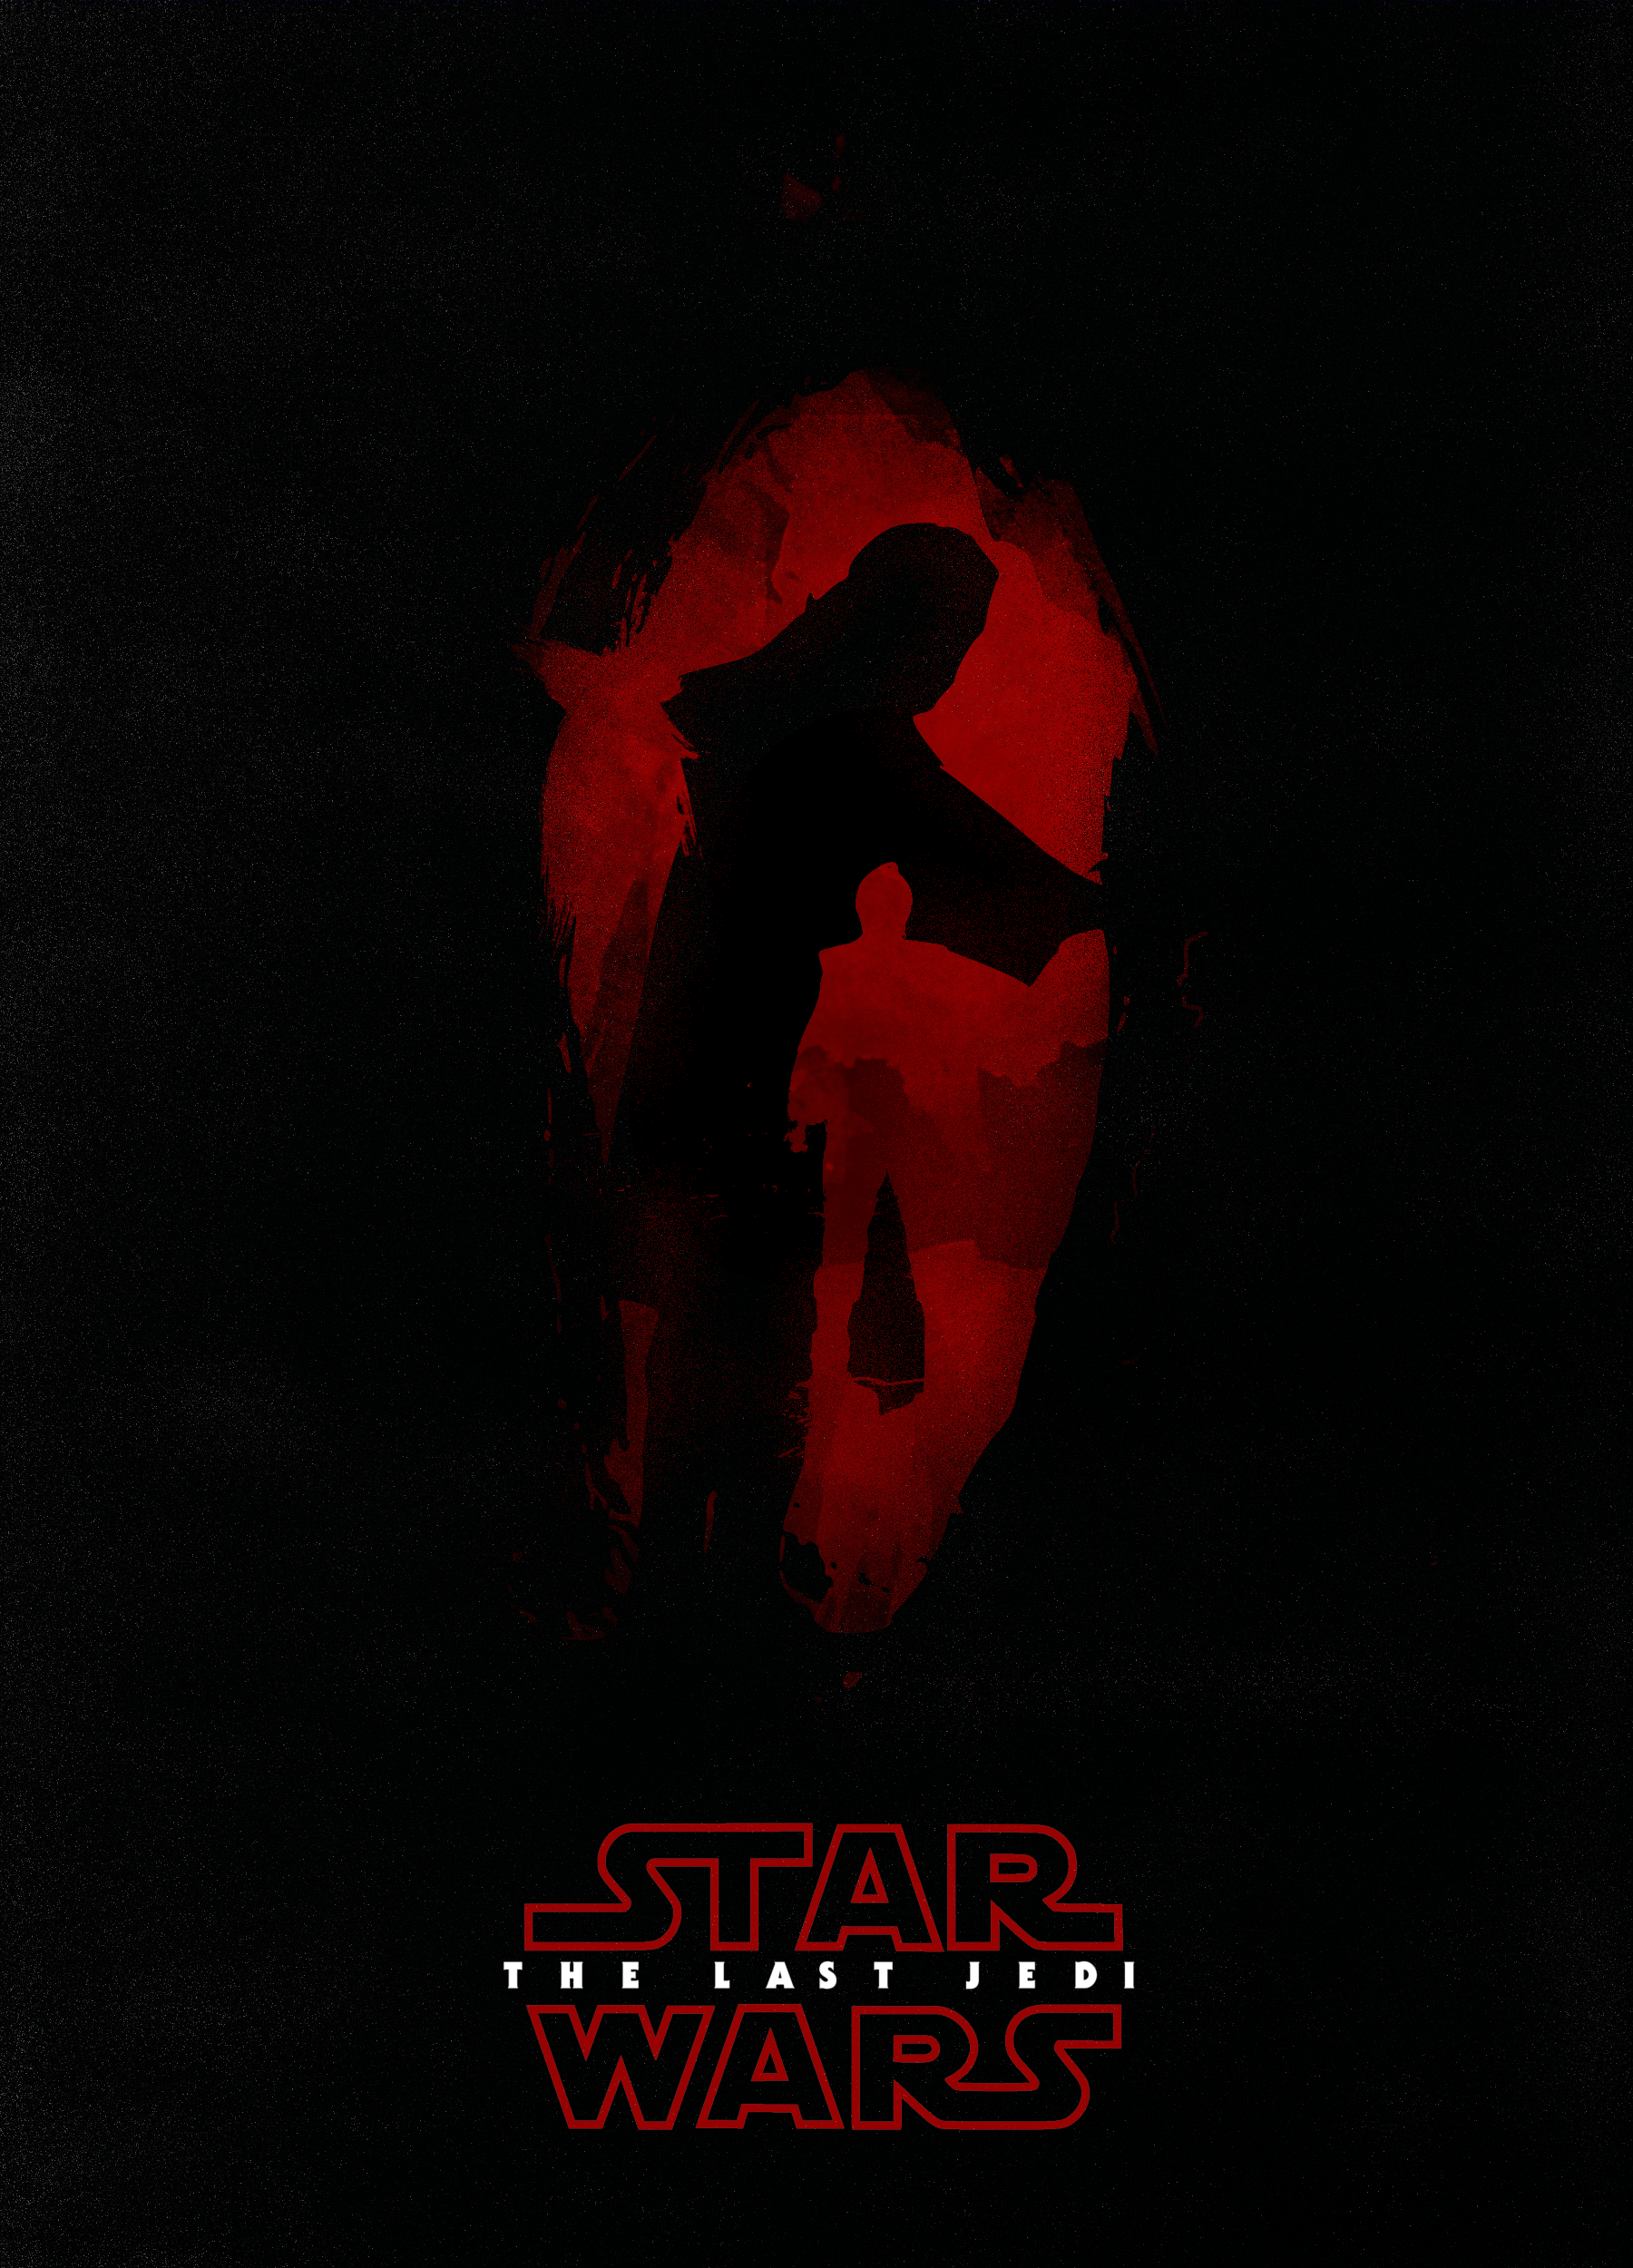 The Last Jedi Poster [OC]